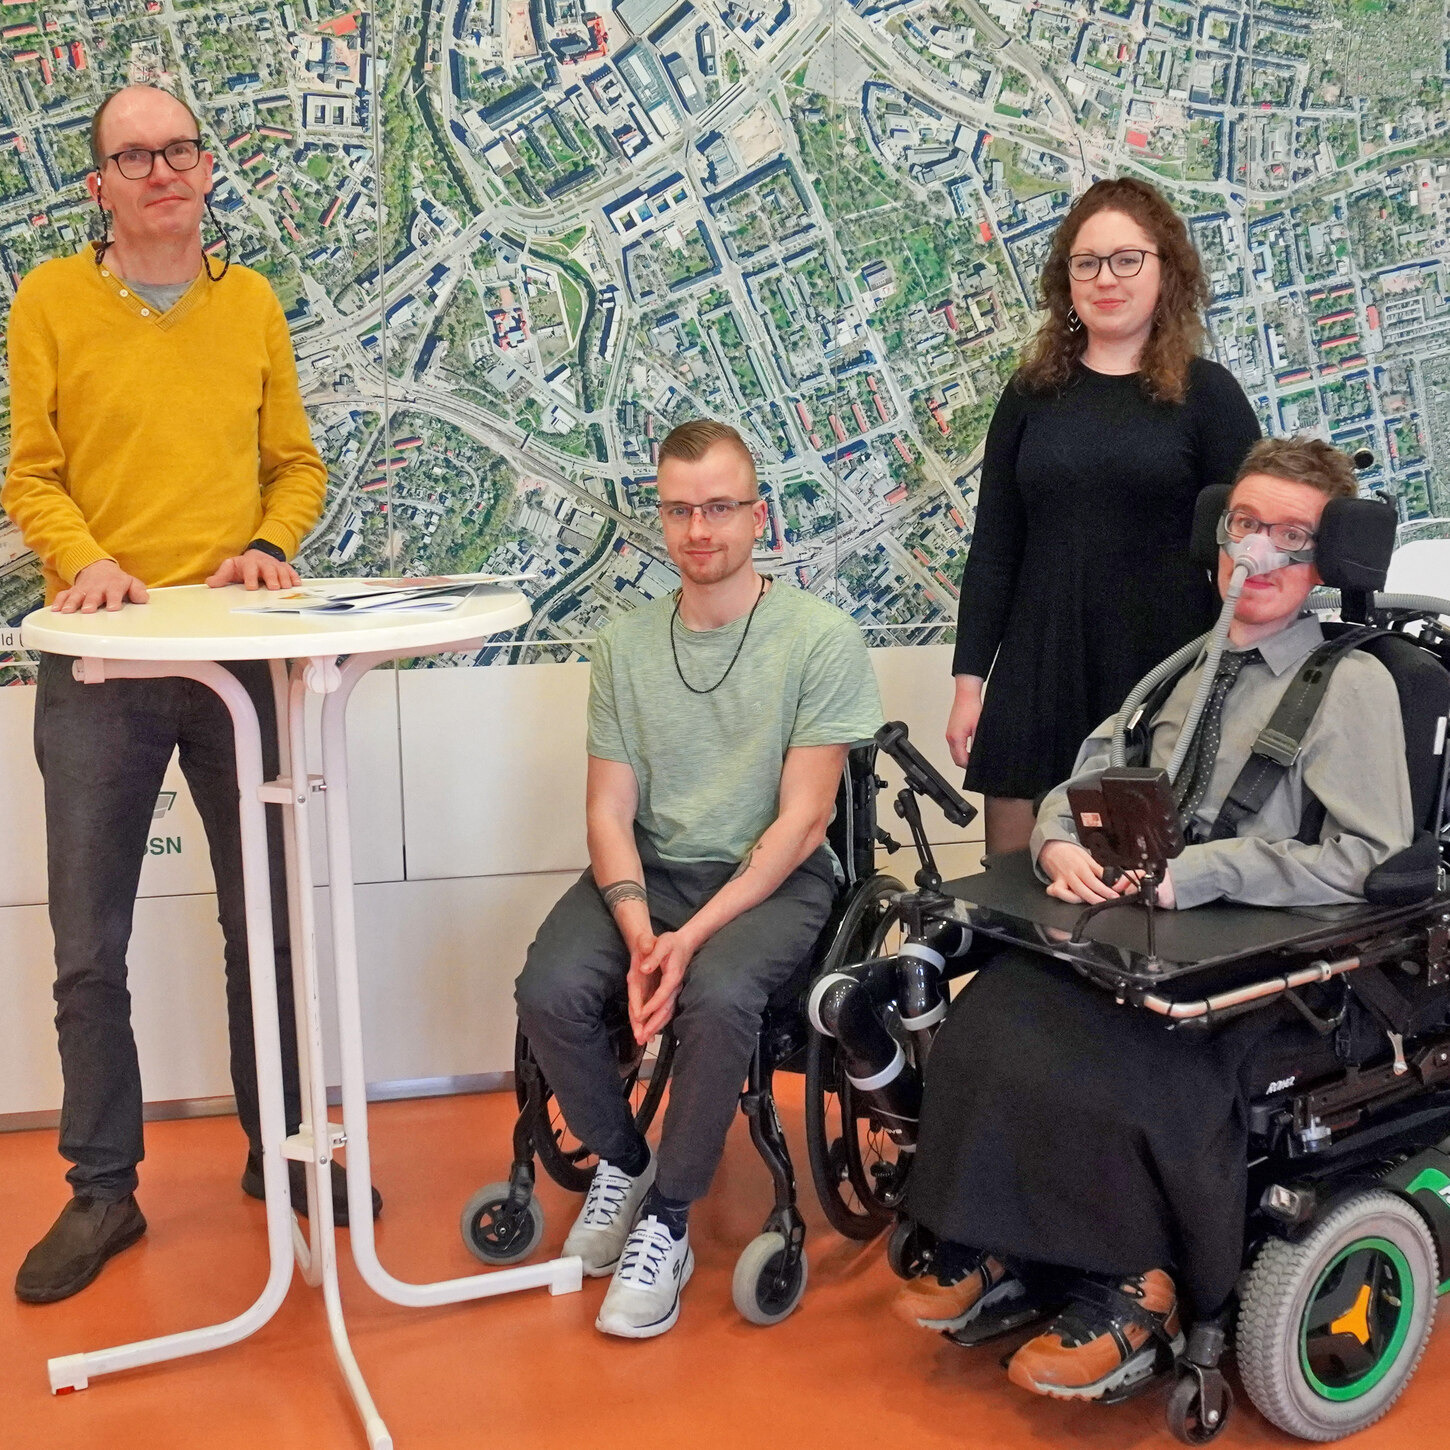 Gruppenfoto der neuen Kollegen mit Behinderung